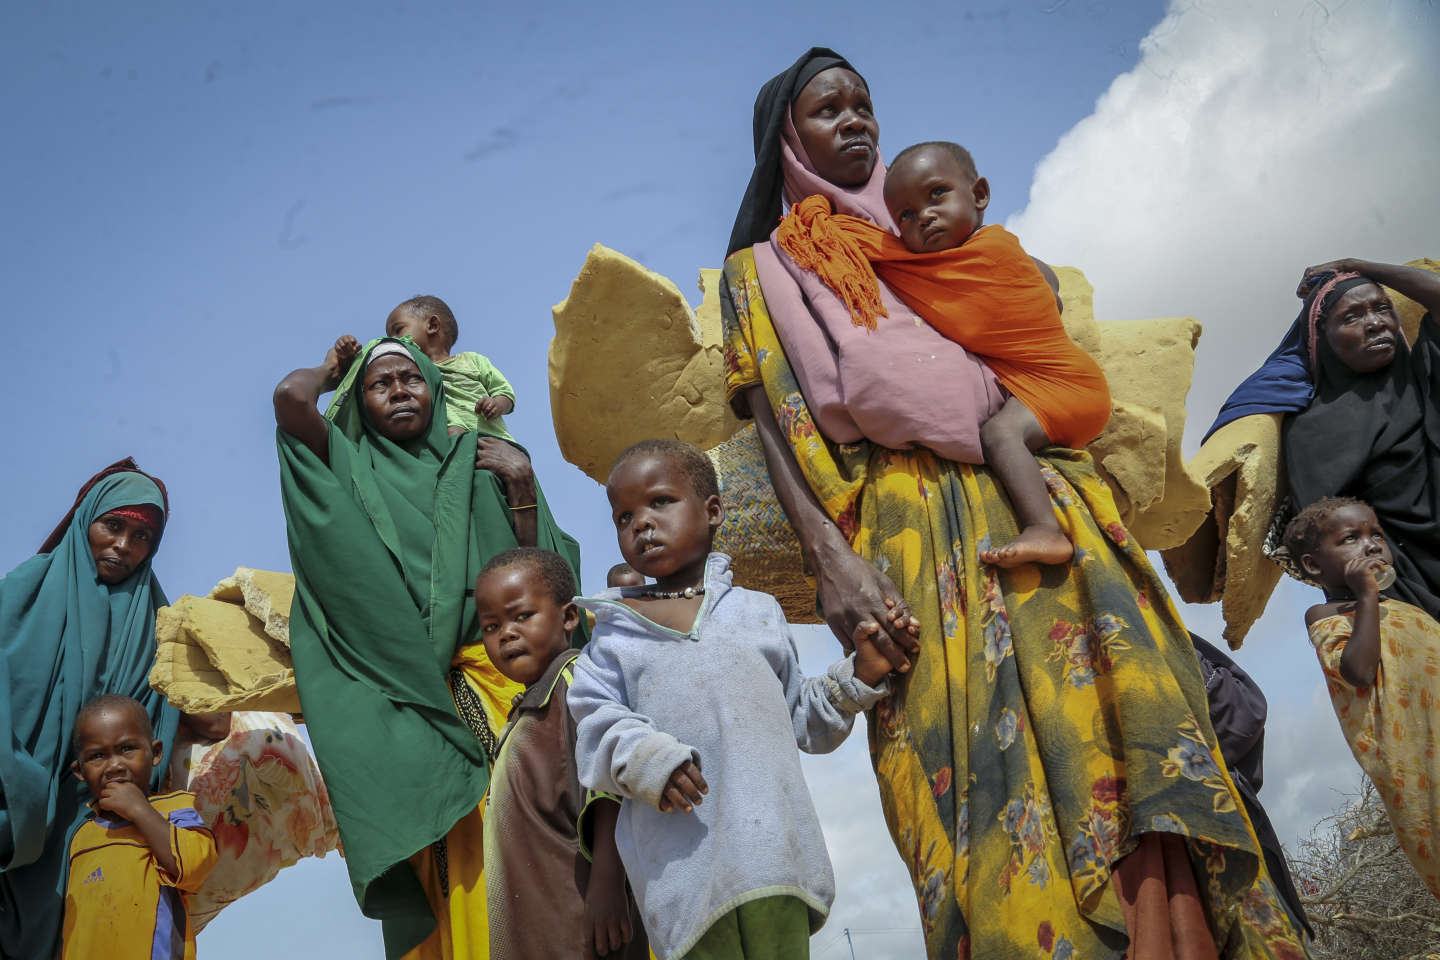 La sécheresse qui touche la Somalie a forcé le déplacement de plus de 1 million de personnes